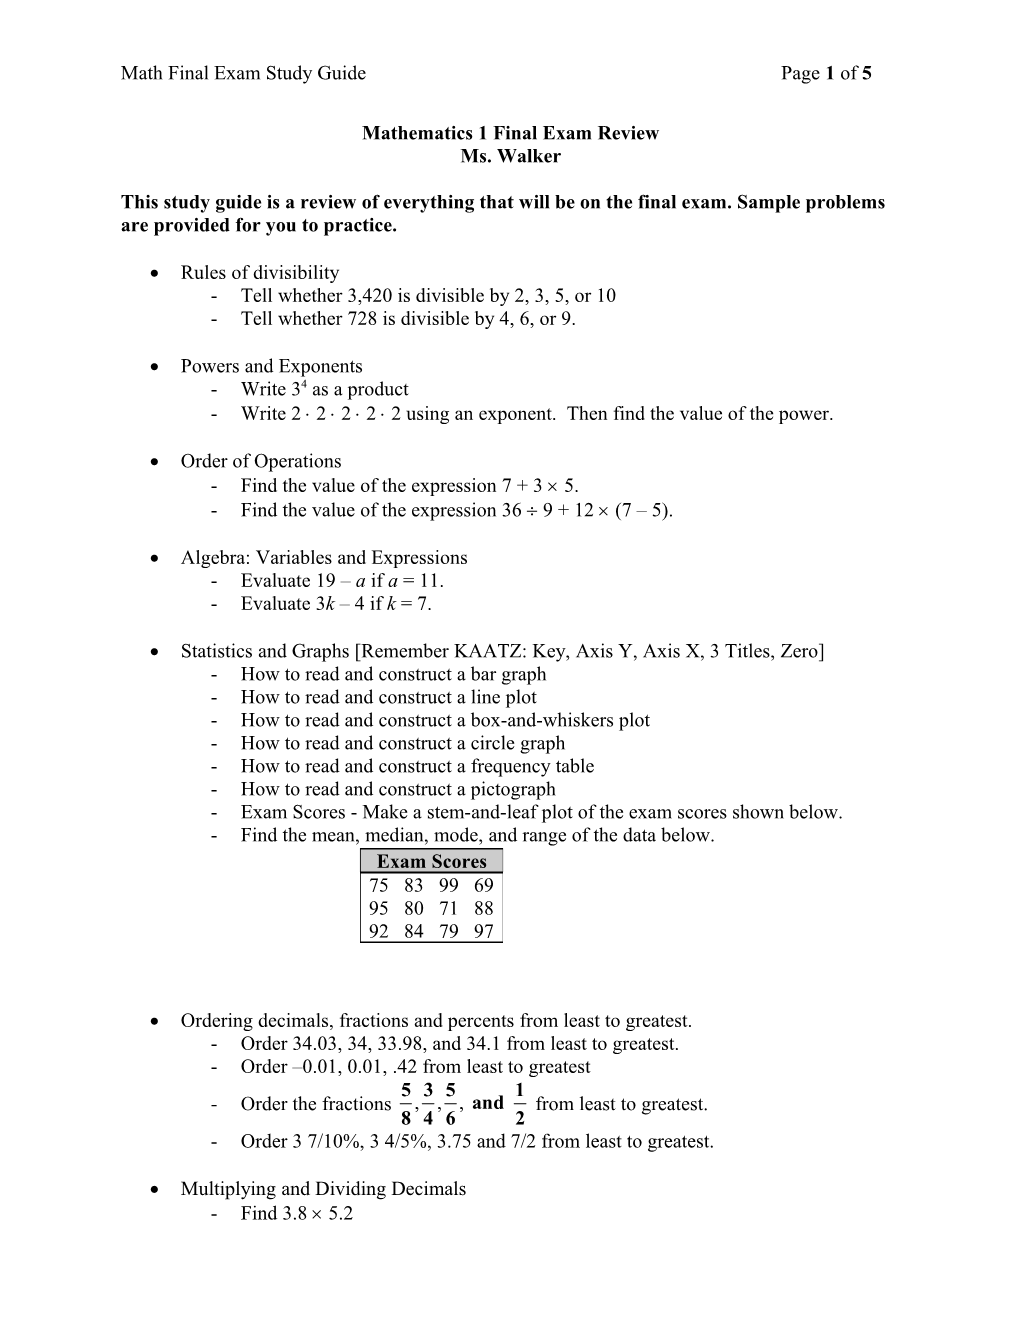 Mathematics 1 Final Exam Review